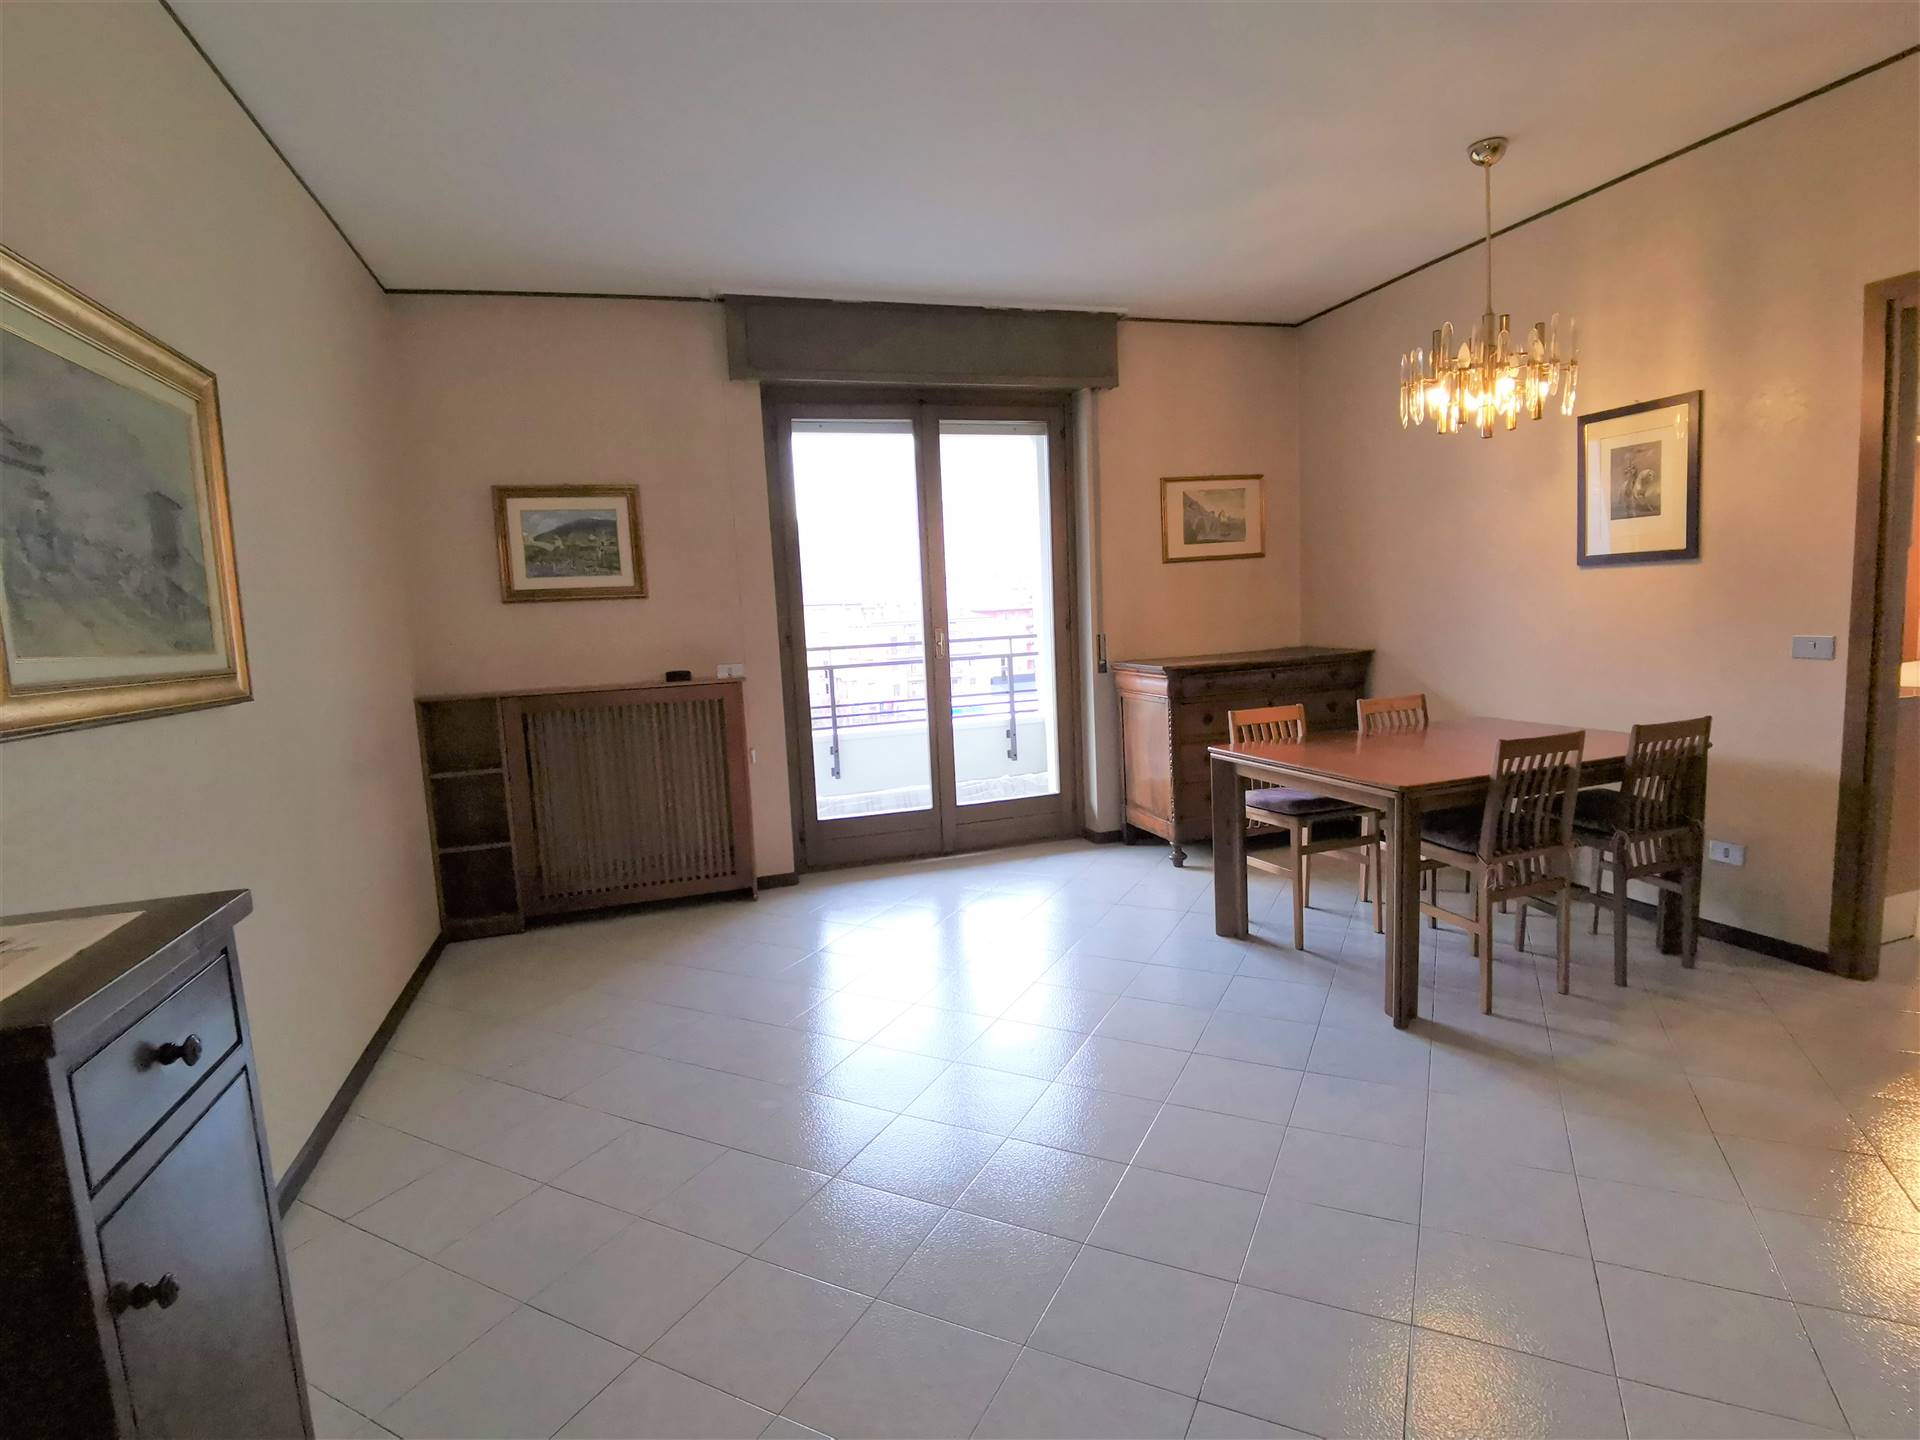 Appartamento in affitto a Sondrio, 4 locali, zona Zona: Centro zona de Simoni , prezzo € 600 | CambioCasa.it